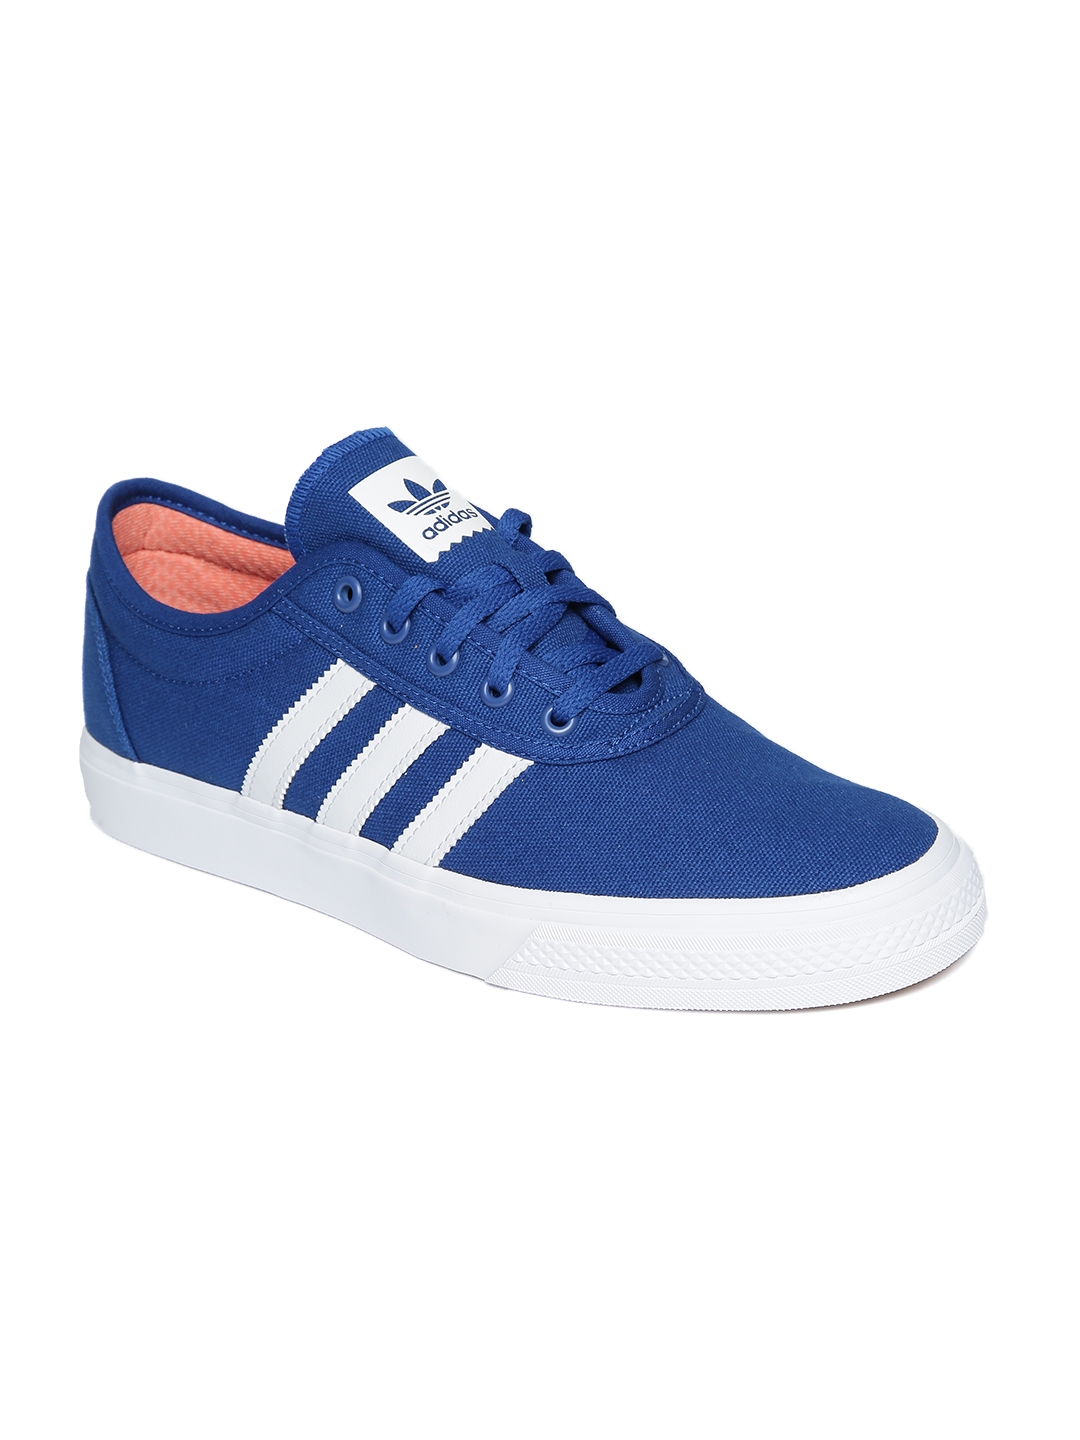 Buy ADIDAS Originals Men Blue ADI Ease Sneakers - Casual Shoes for Men ...